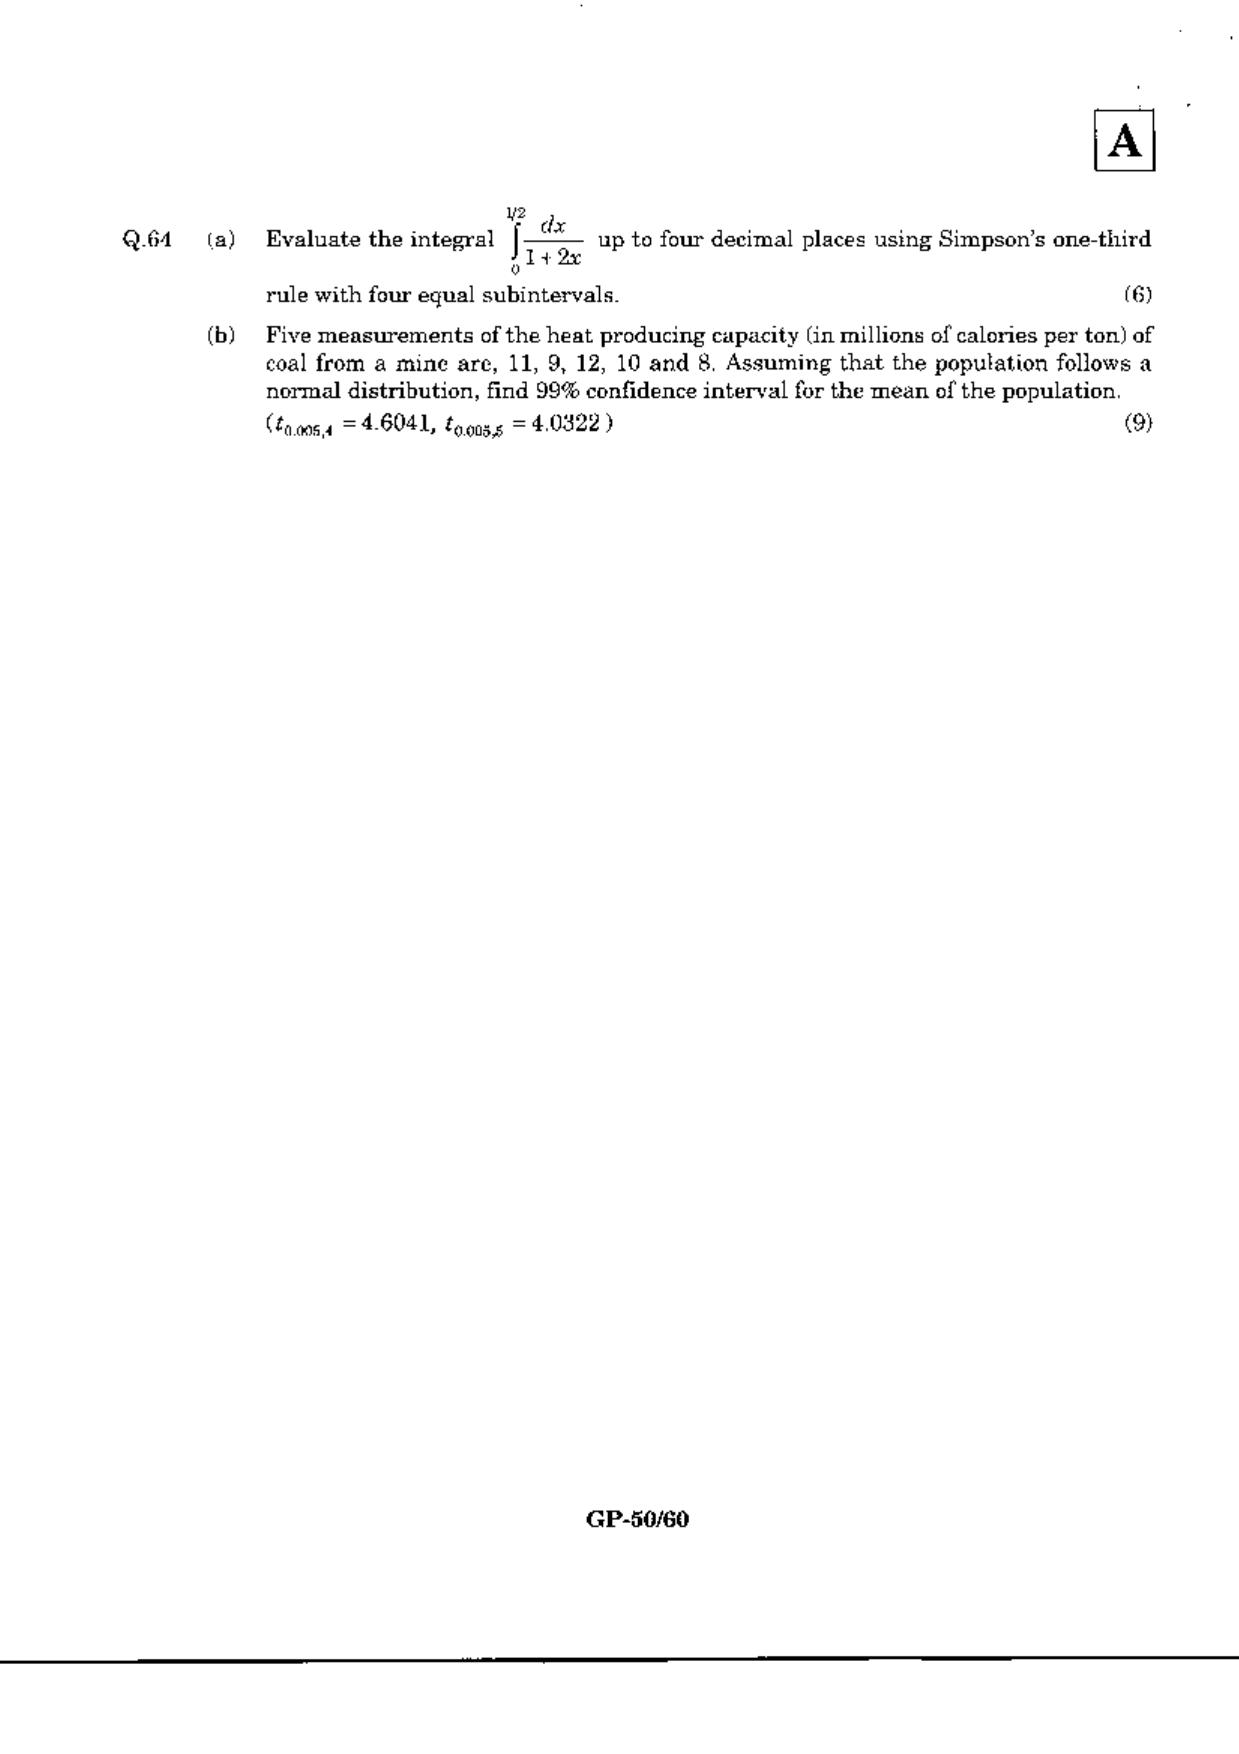 JAM 2010: GP Question Paper - Page 52